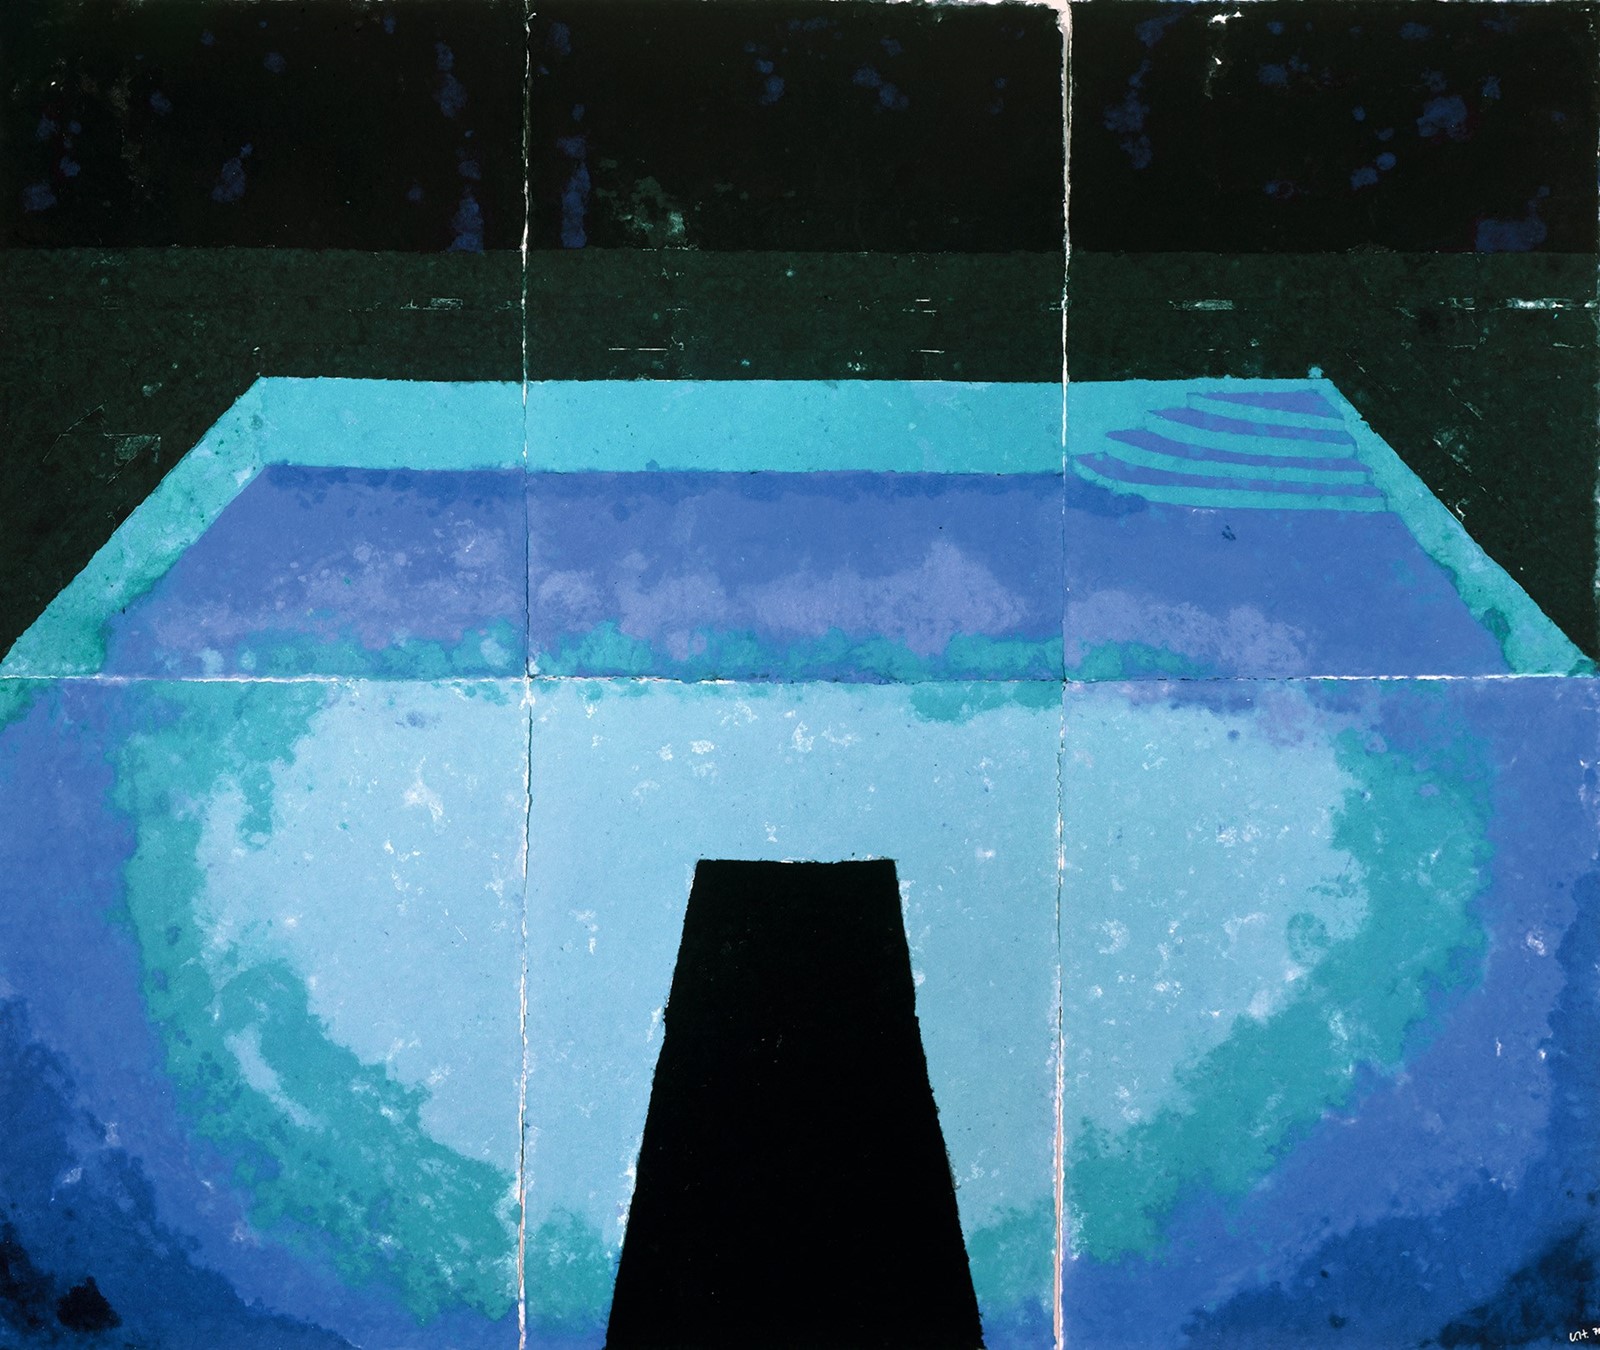 David Hockney, Midnight Pool (Paper Pool 10), 1978, coloured